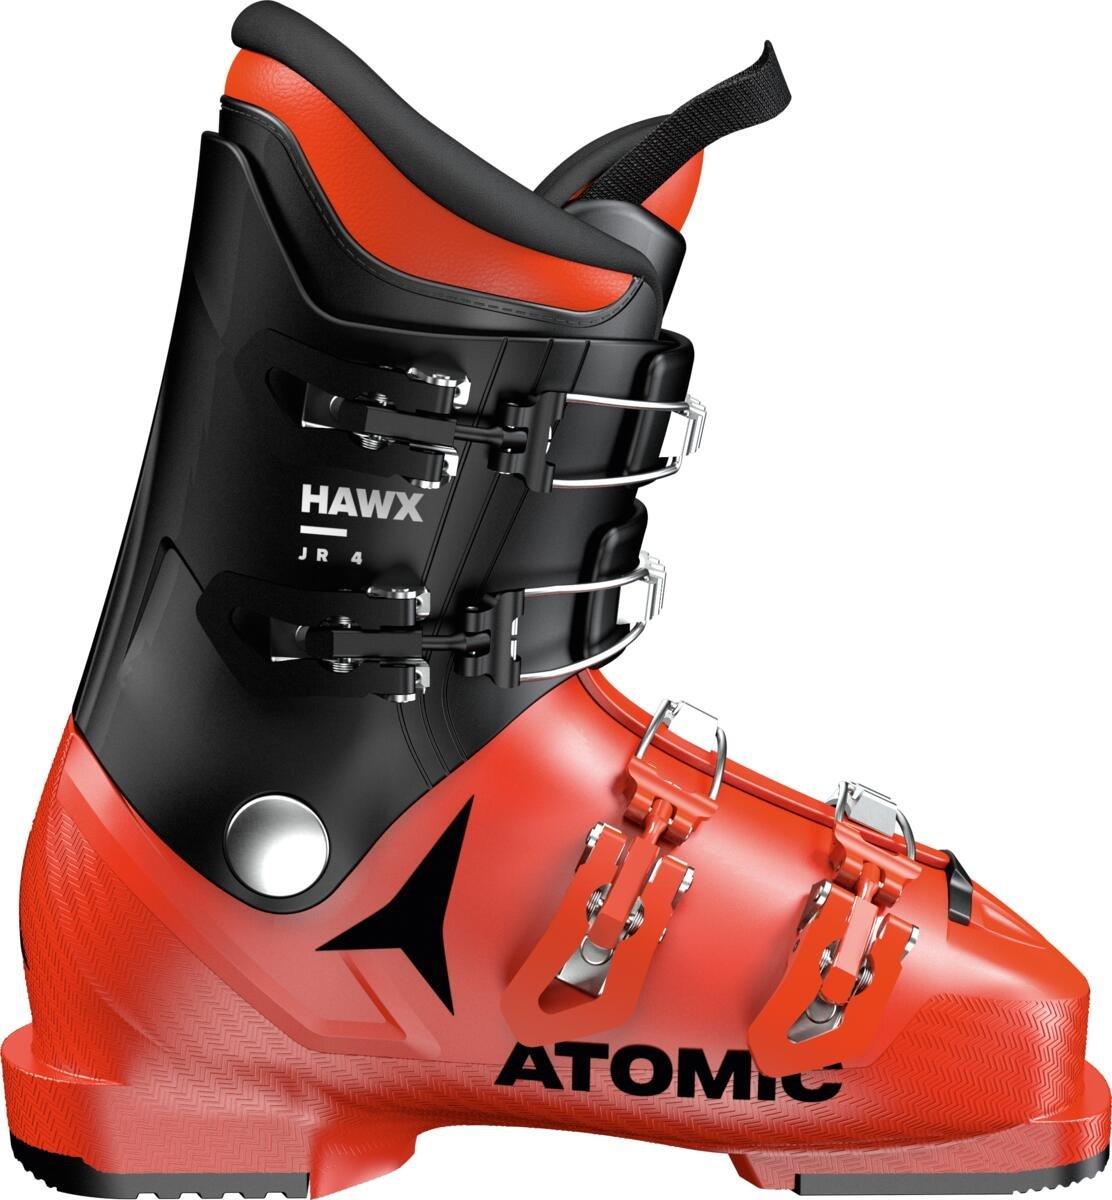 Detské lyžiarky Atomic Hawx 4 Junior Veľkosť: 26 cm